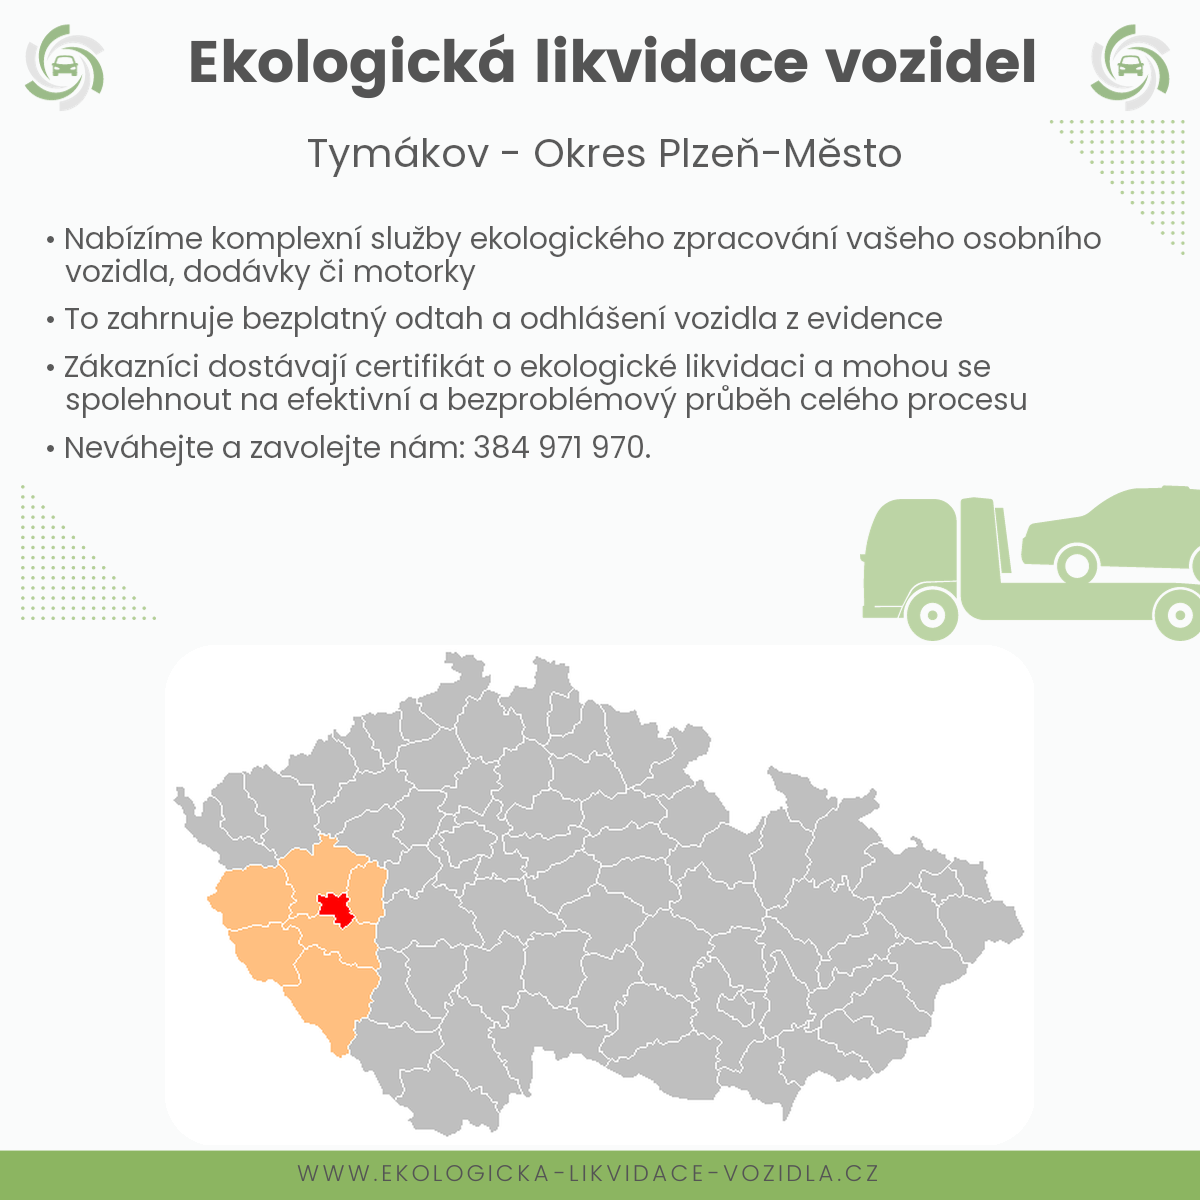 likvidace vozidel - Tymákov